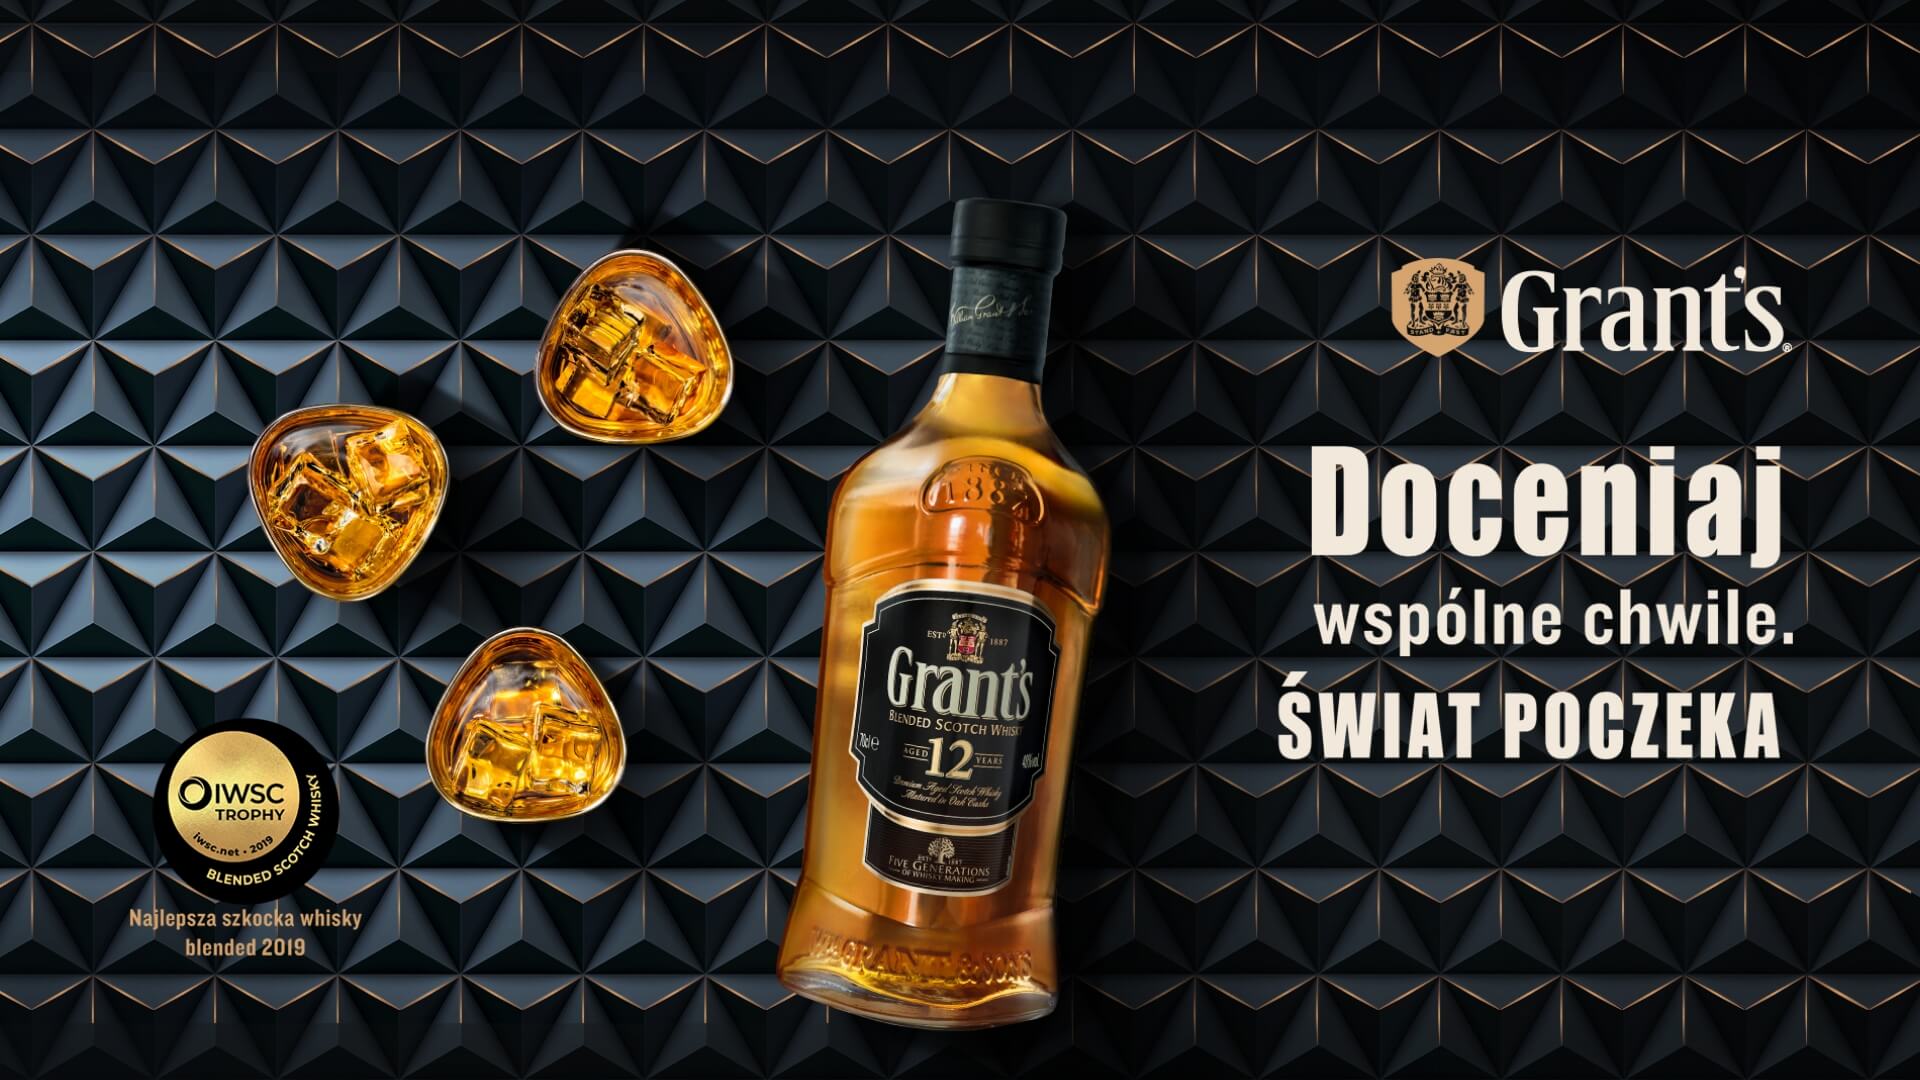 Granst's. Najlepsza szkocka whisky blended 2019. Doceniaj wspólne chwile. Świat poczeka.